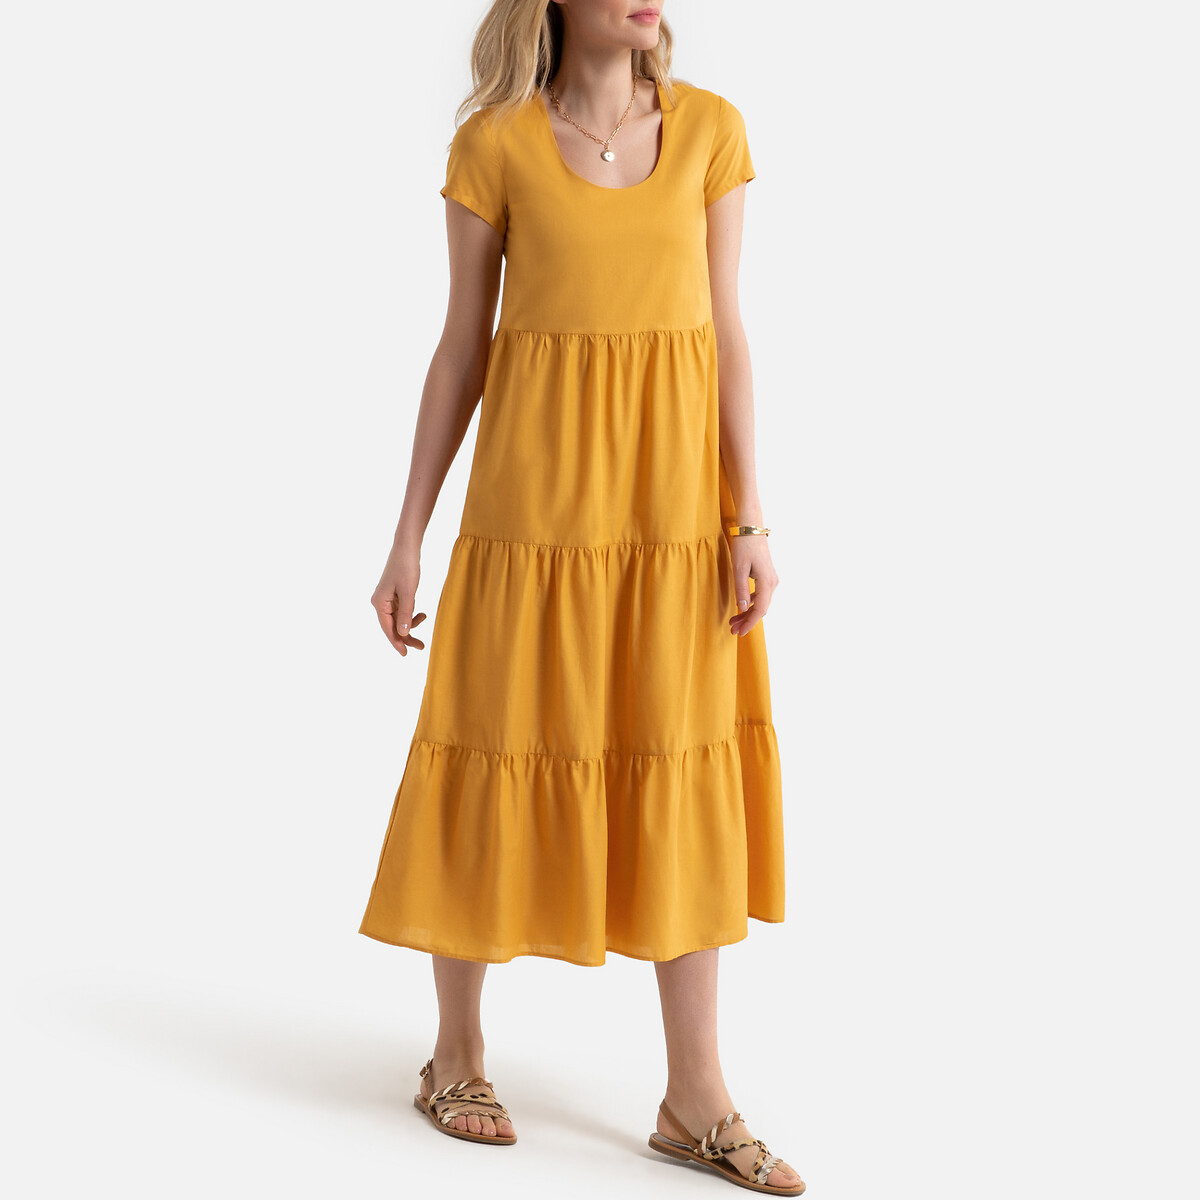 Платье LaRedoute Длинное расклешенное с короткими рукавами 36 (FR) - 42 (RUS) желтый, размер 36 (FR) - 42 (RUS) Длинное расклешенное с короткими рукавами 36 (FR) - 42 (RUS) желтый - фото 1